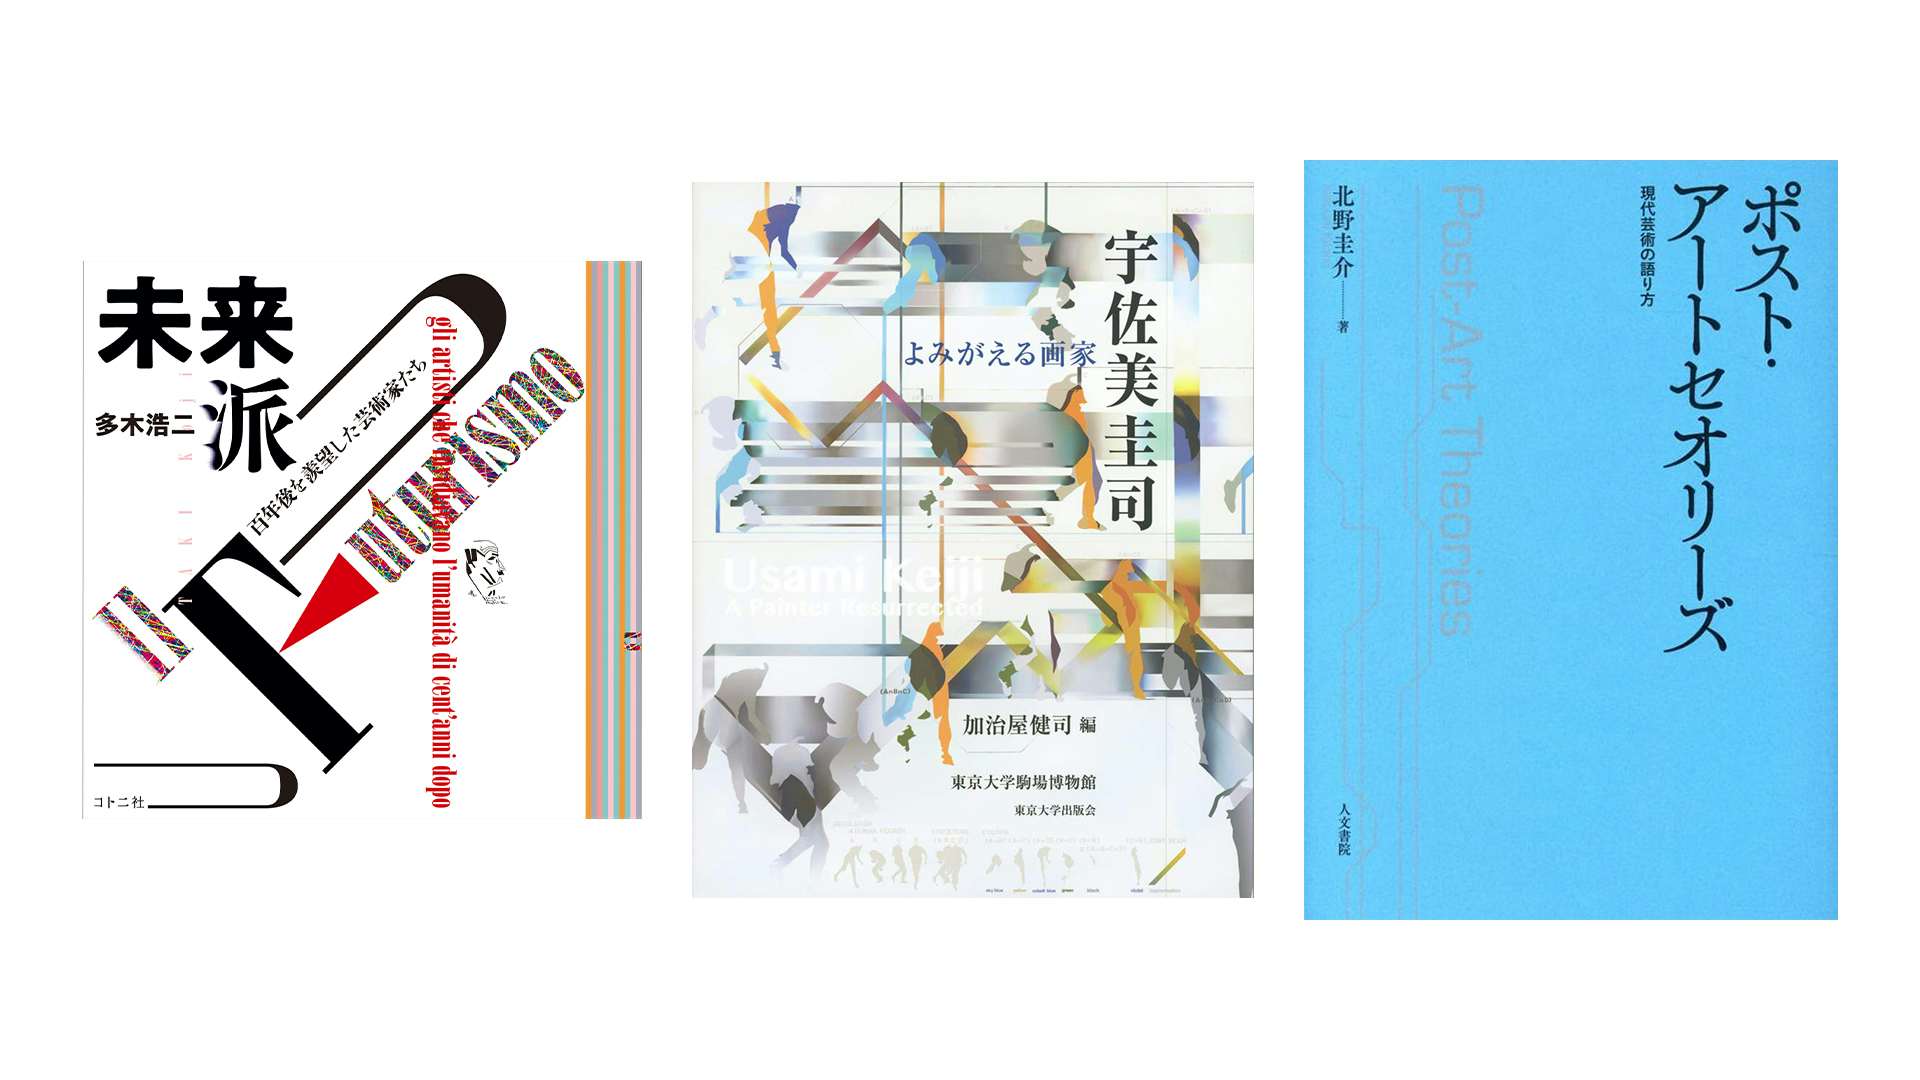 宇佐美圭司展の図録から、多木浩二が見た未来派まで。『美術手帖』8月 